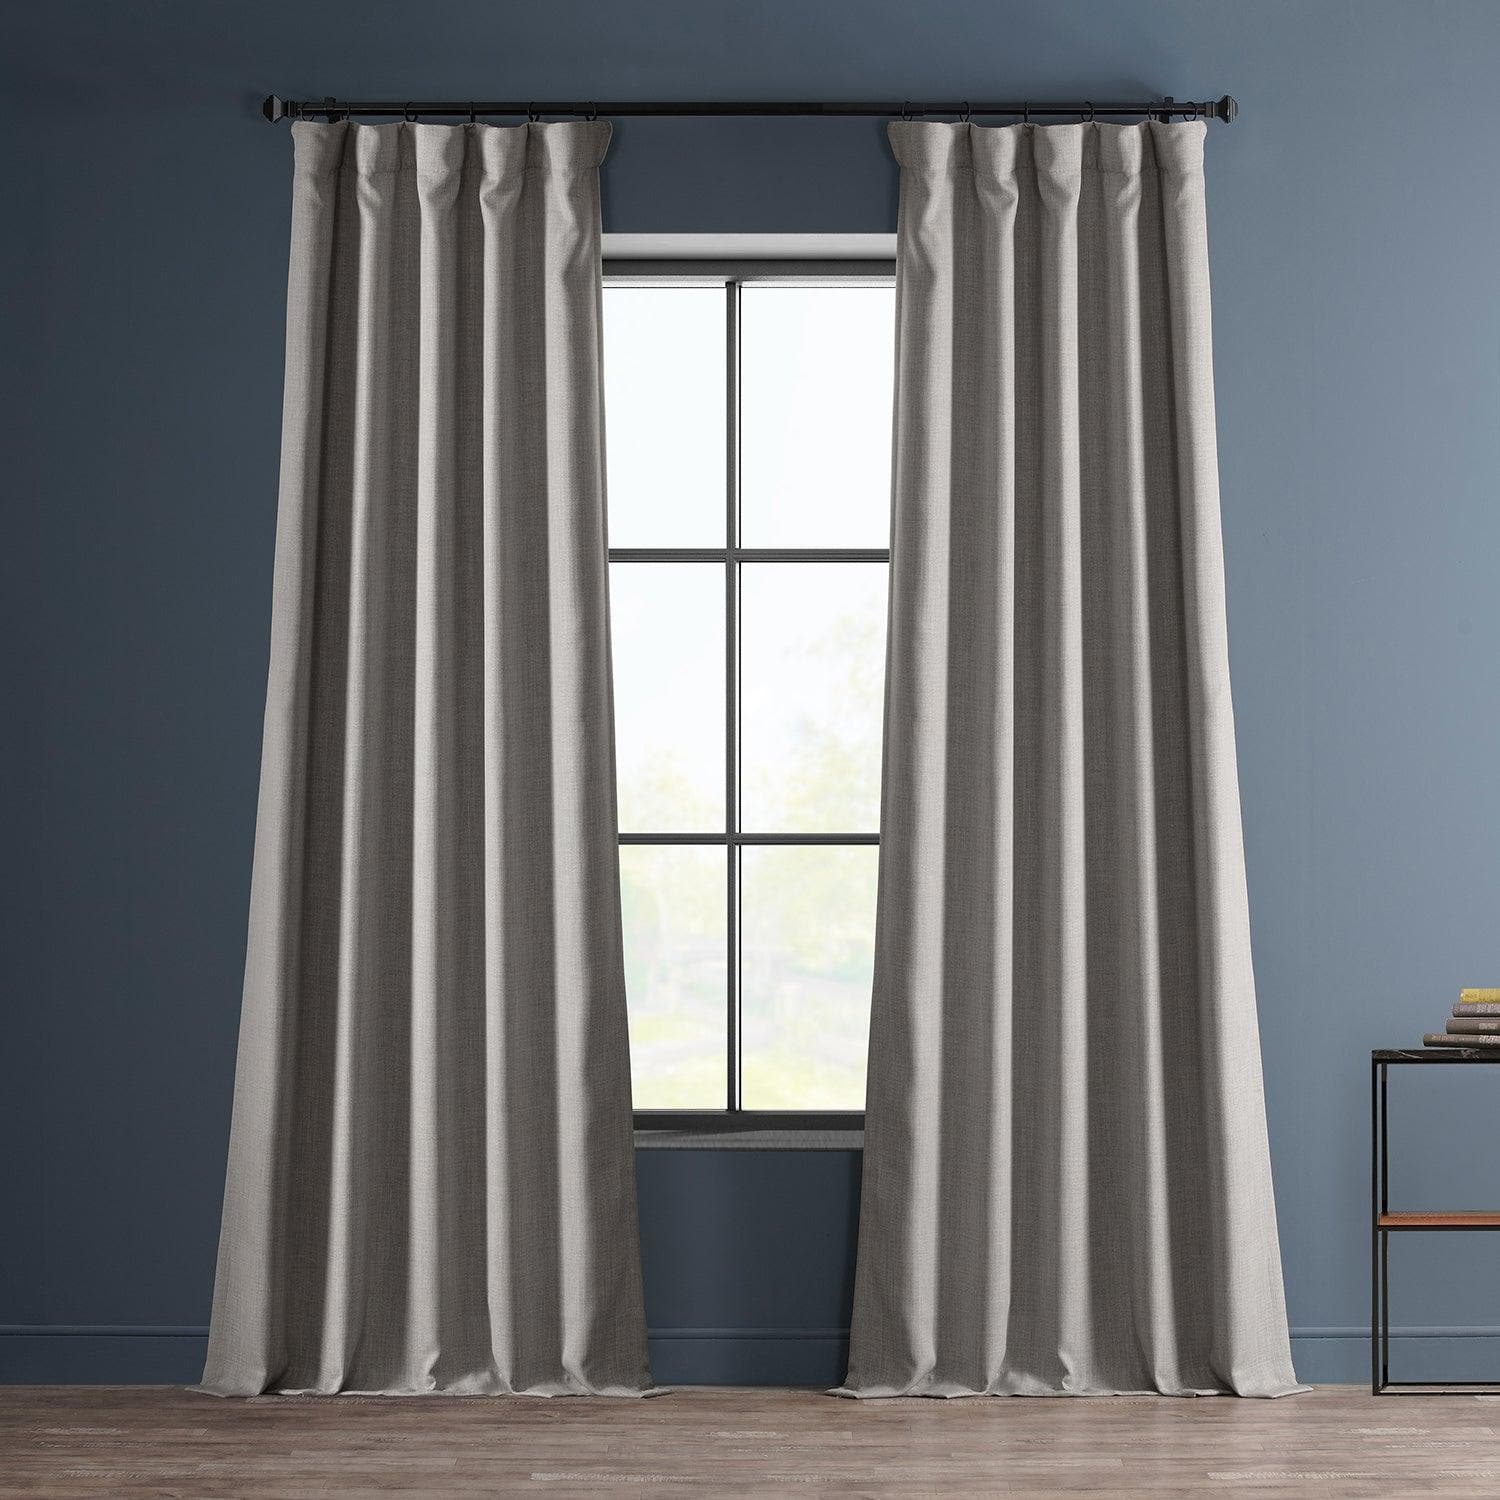 Clay Textured Faux Linen Room Darkening Curtain